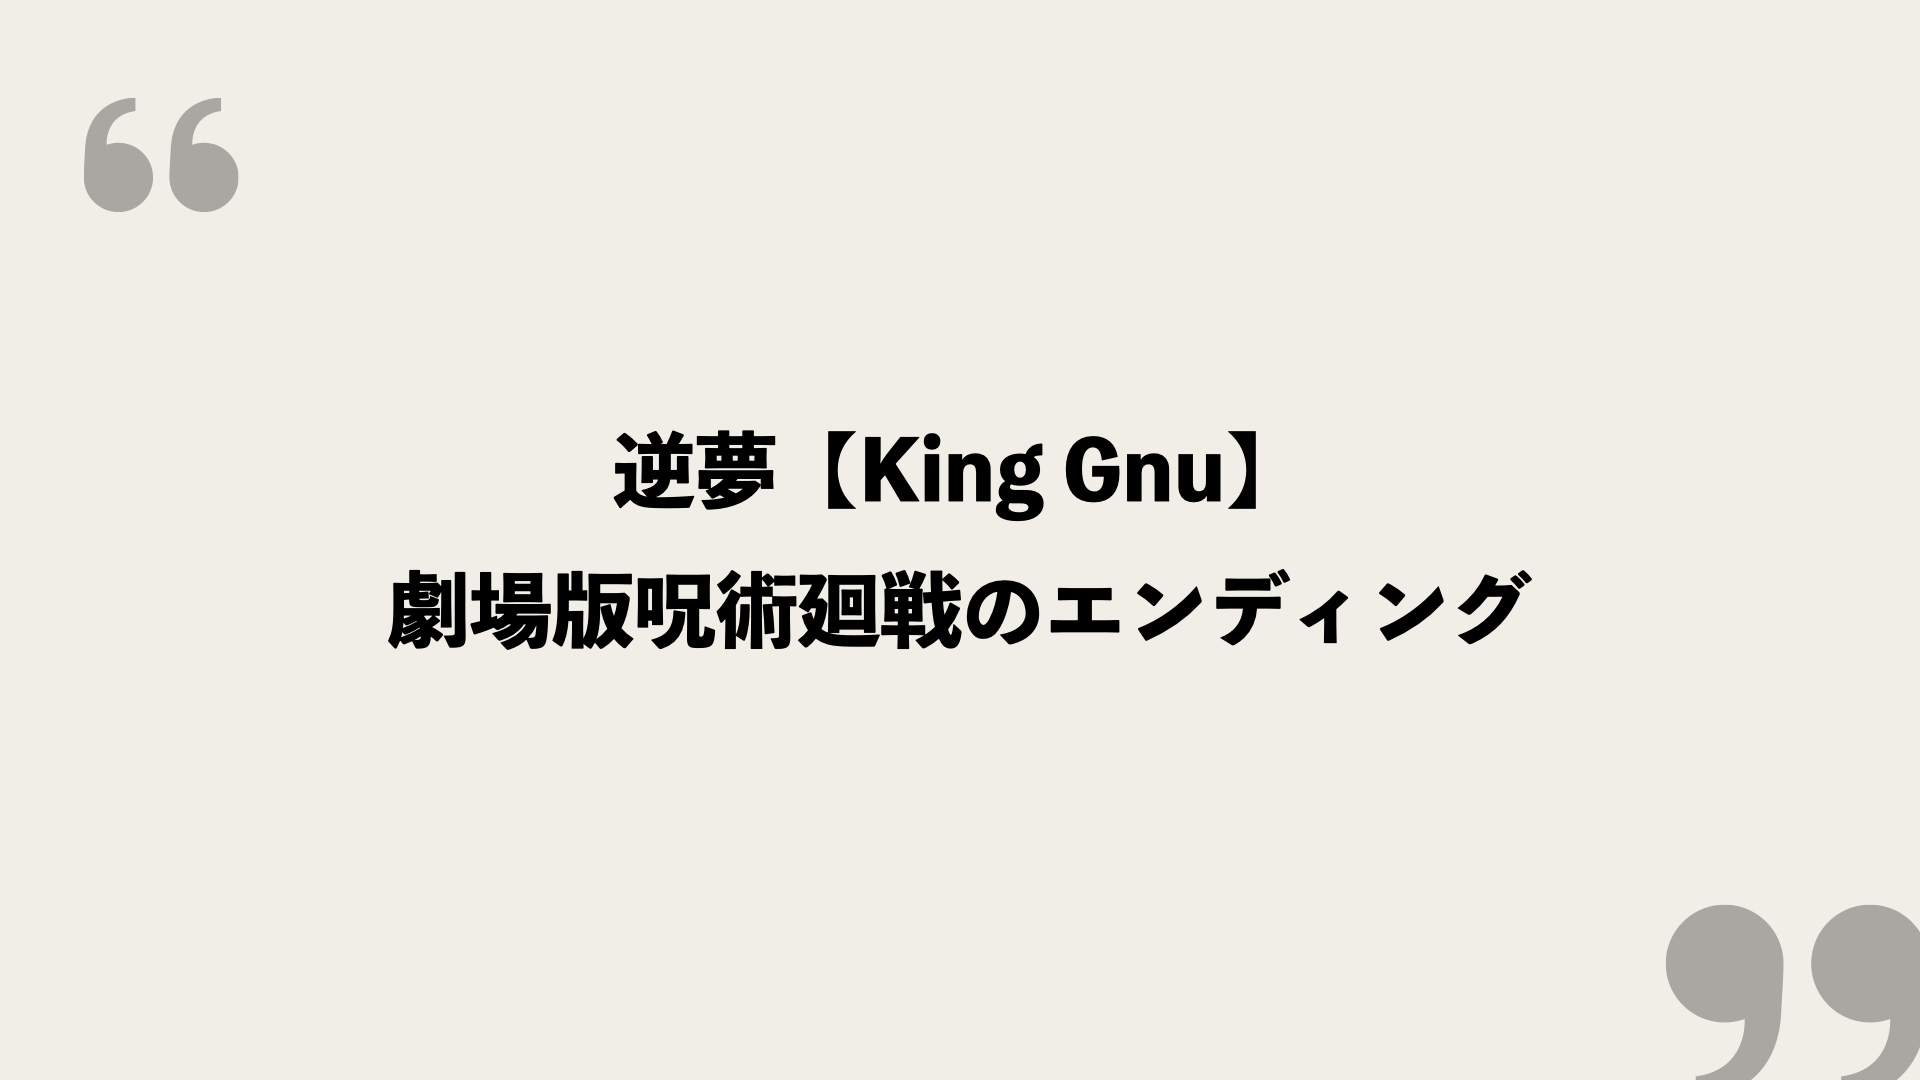 逆夢 King Gnu 歌詞の意味を考察 劇場版呪術廻戦のエンディング Framu Media